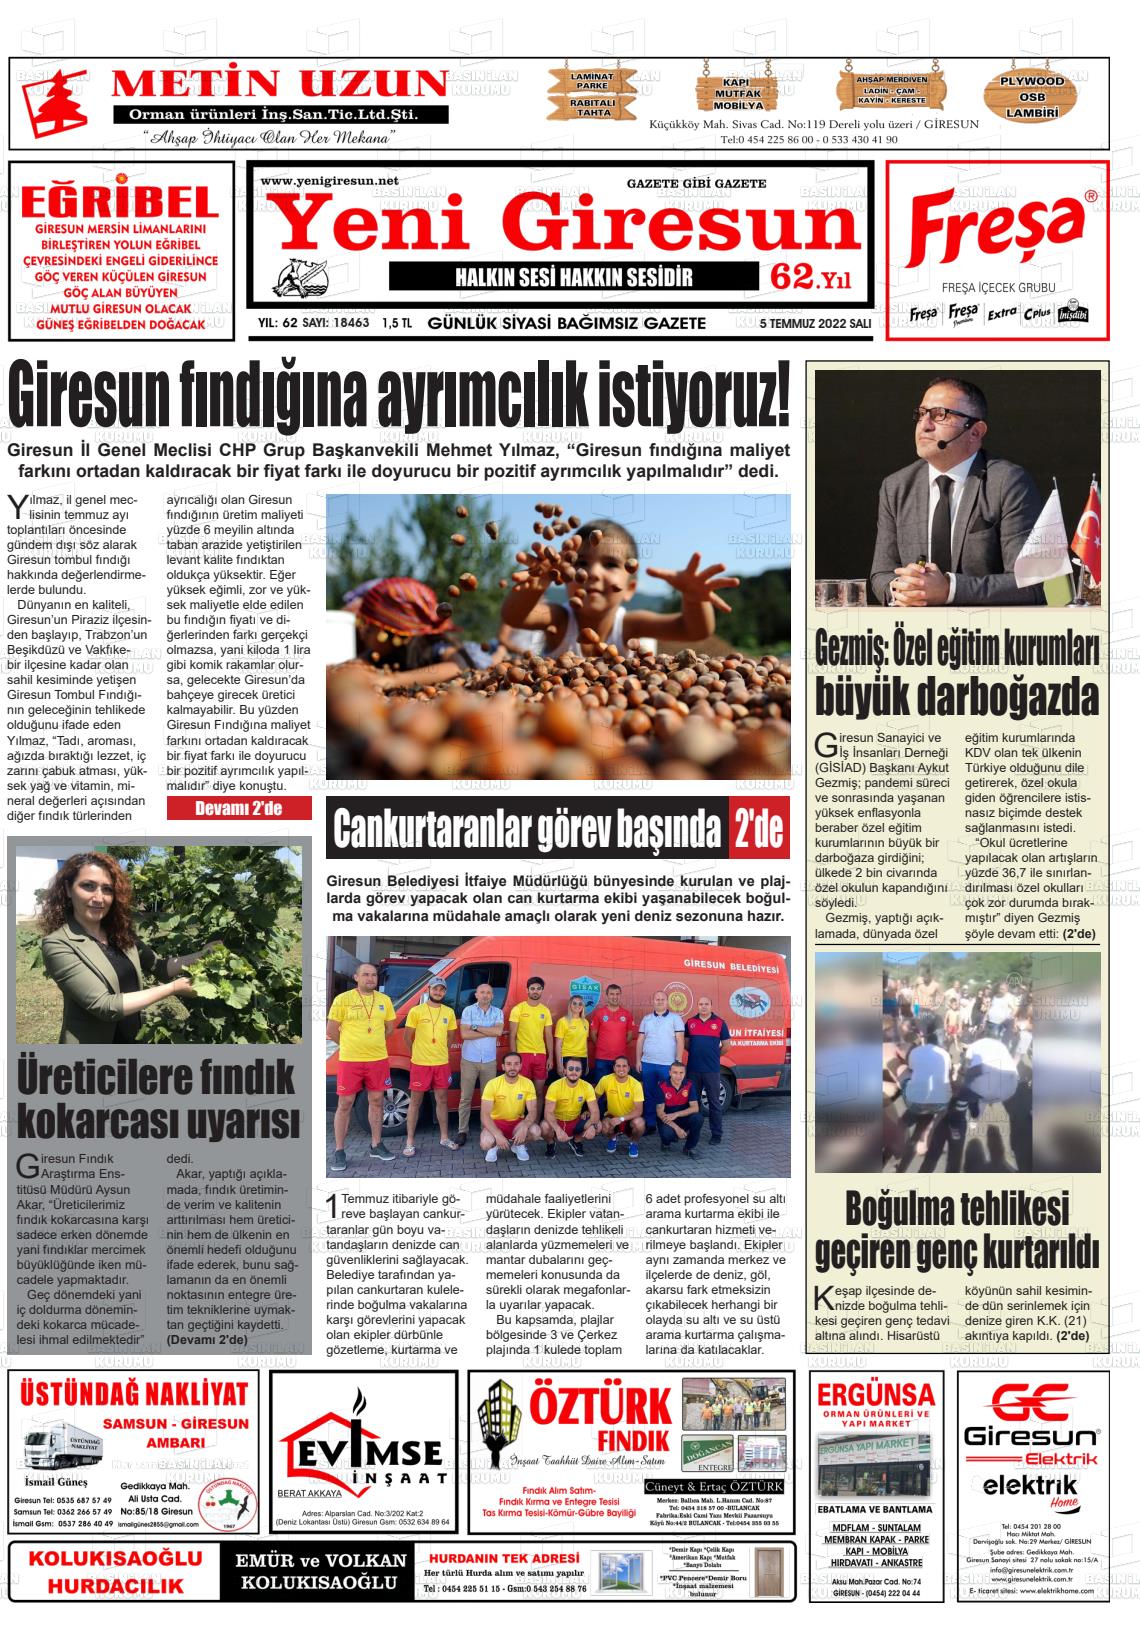 05 Temmuz 2022 Yeni Giresun Gazete Manşeti